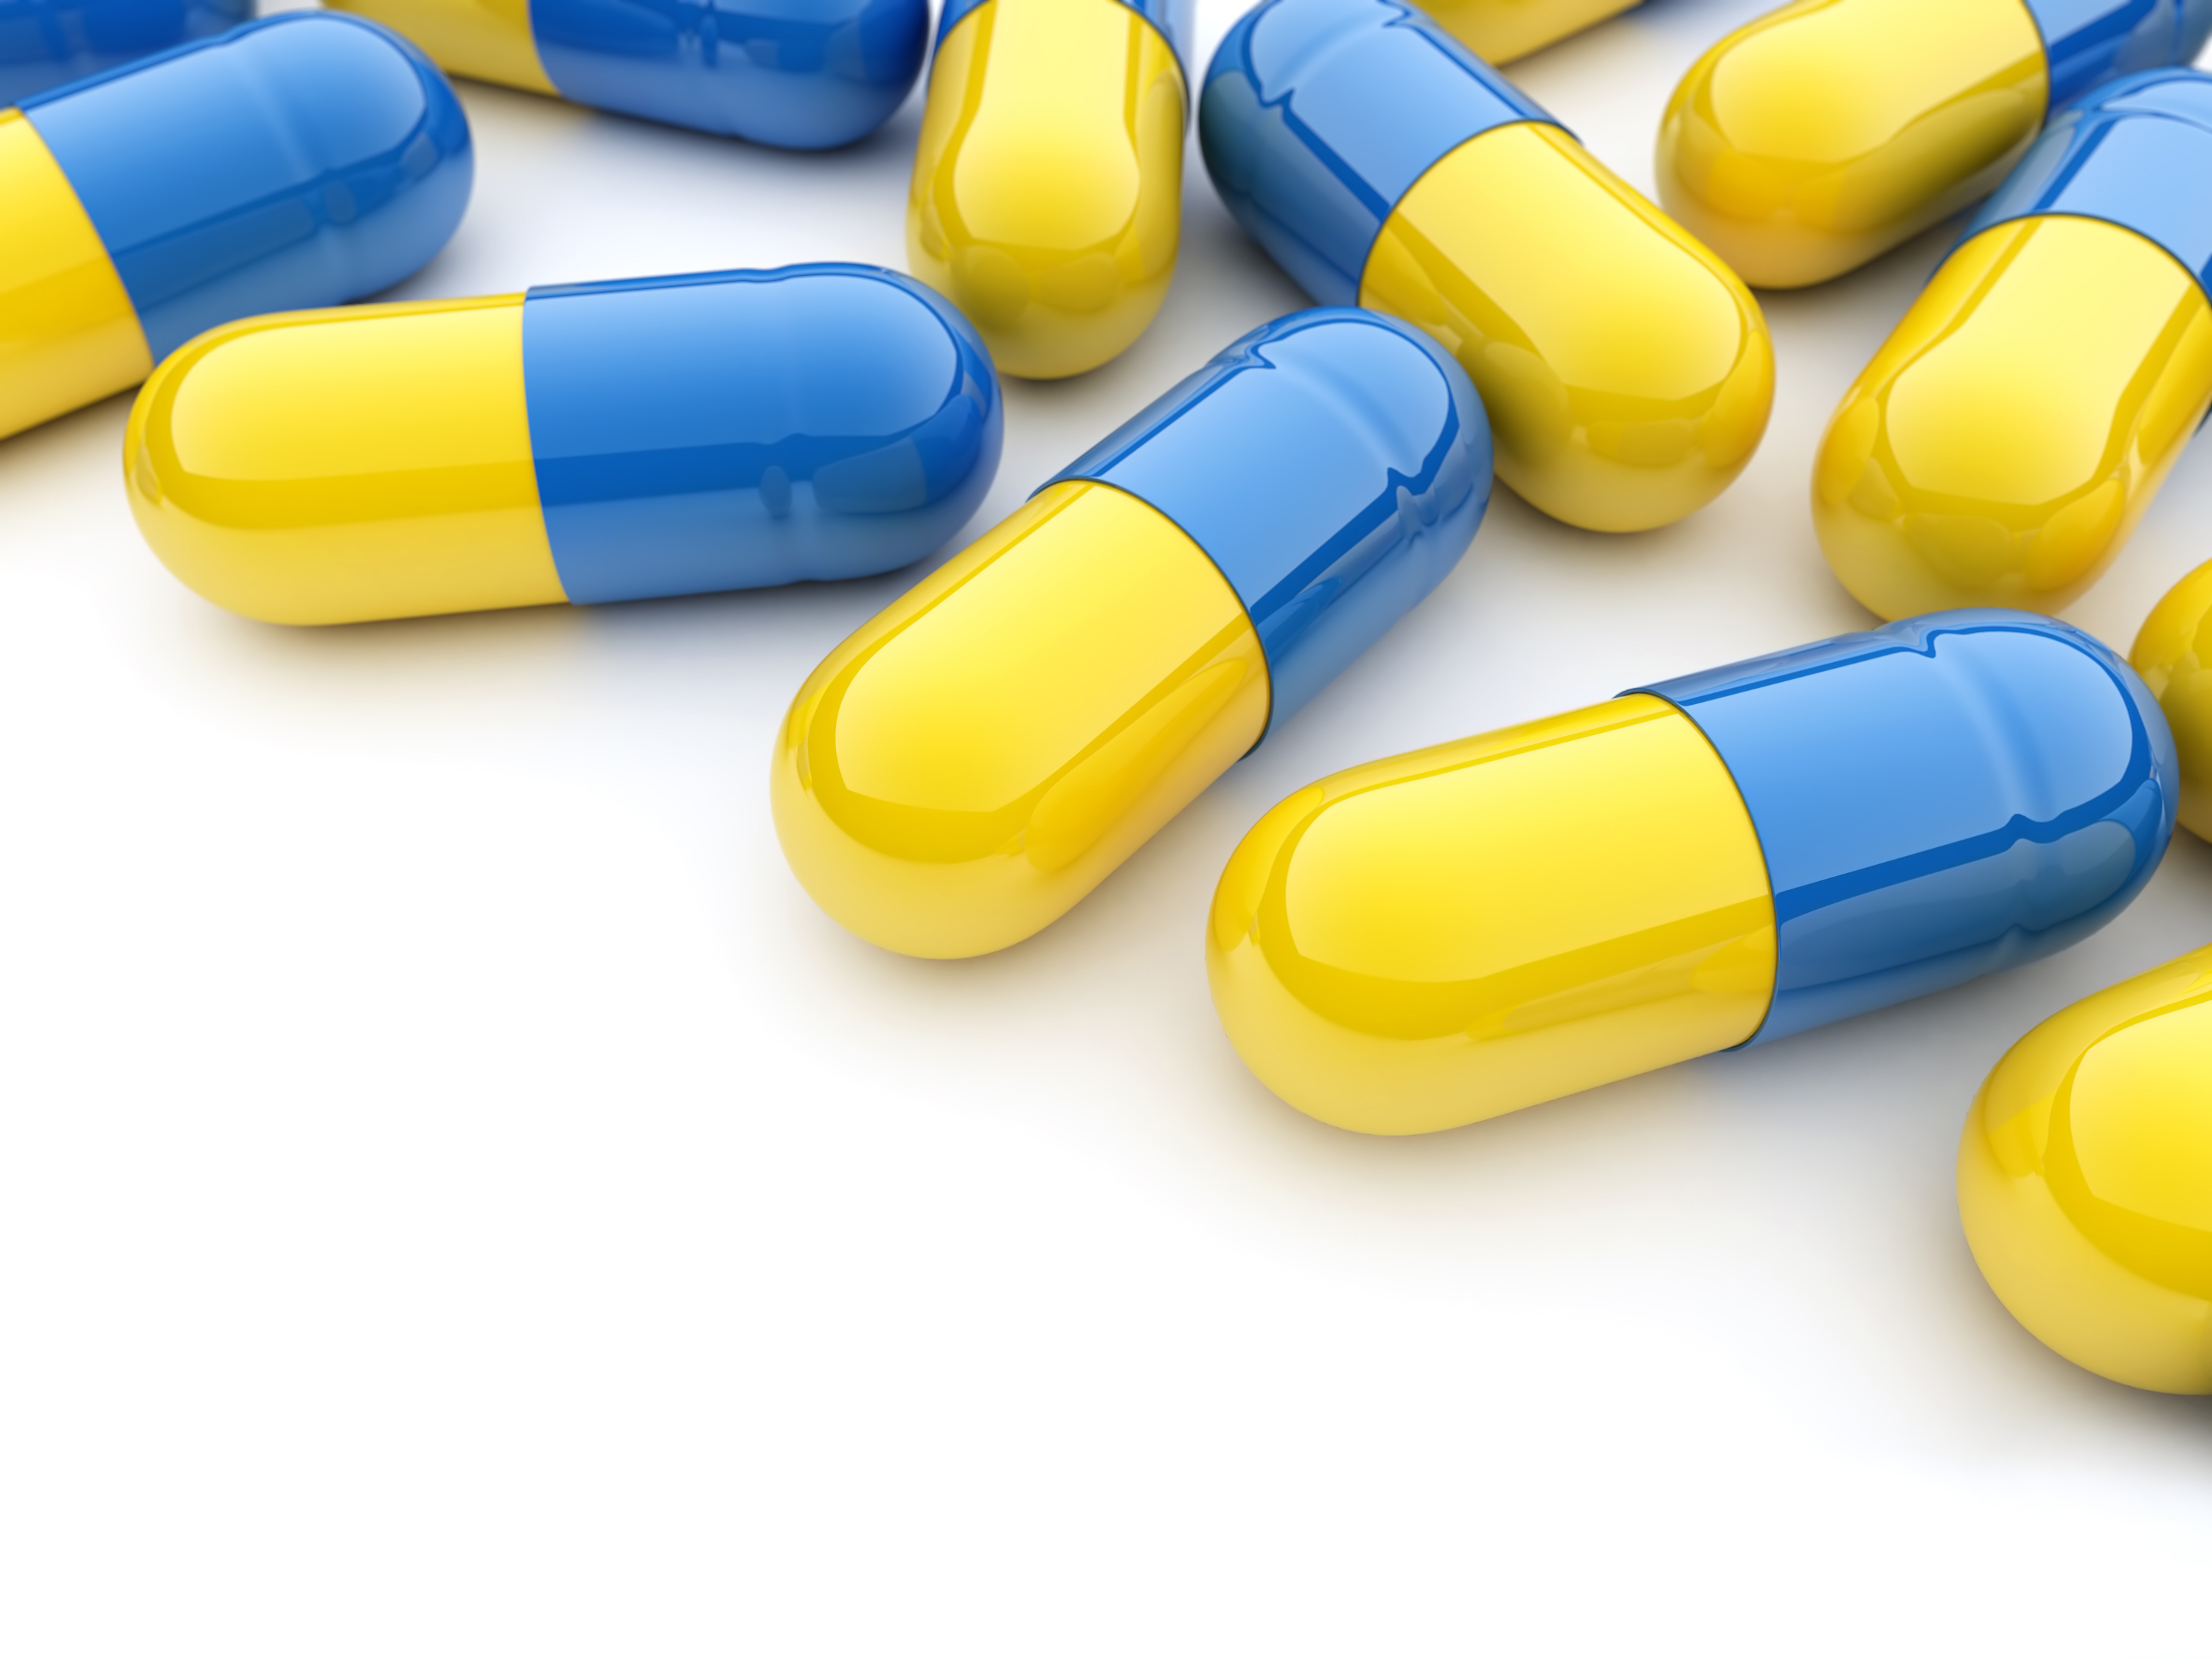 Novel Analgesic Drug Holds New Promise For Chronic Pain Relief